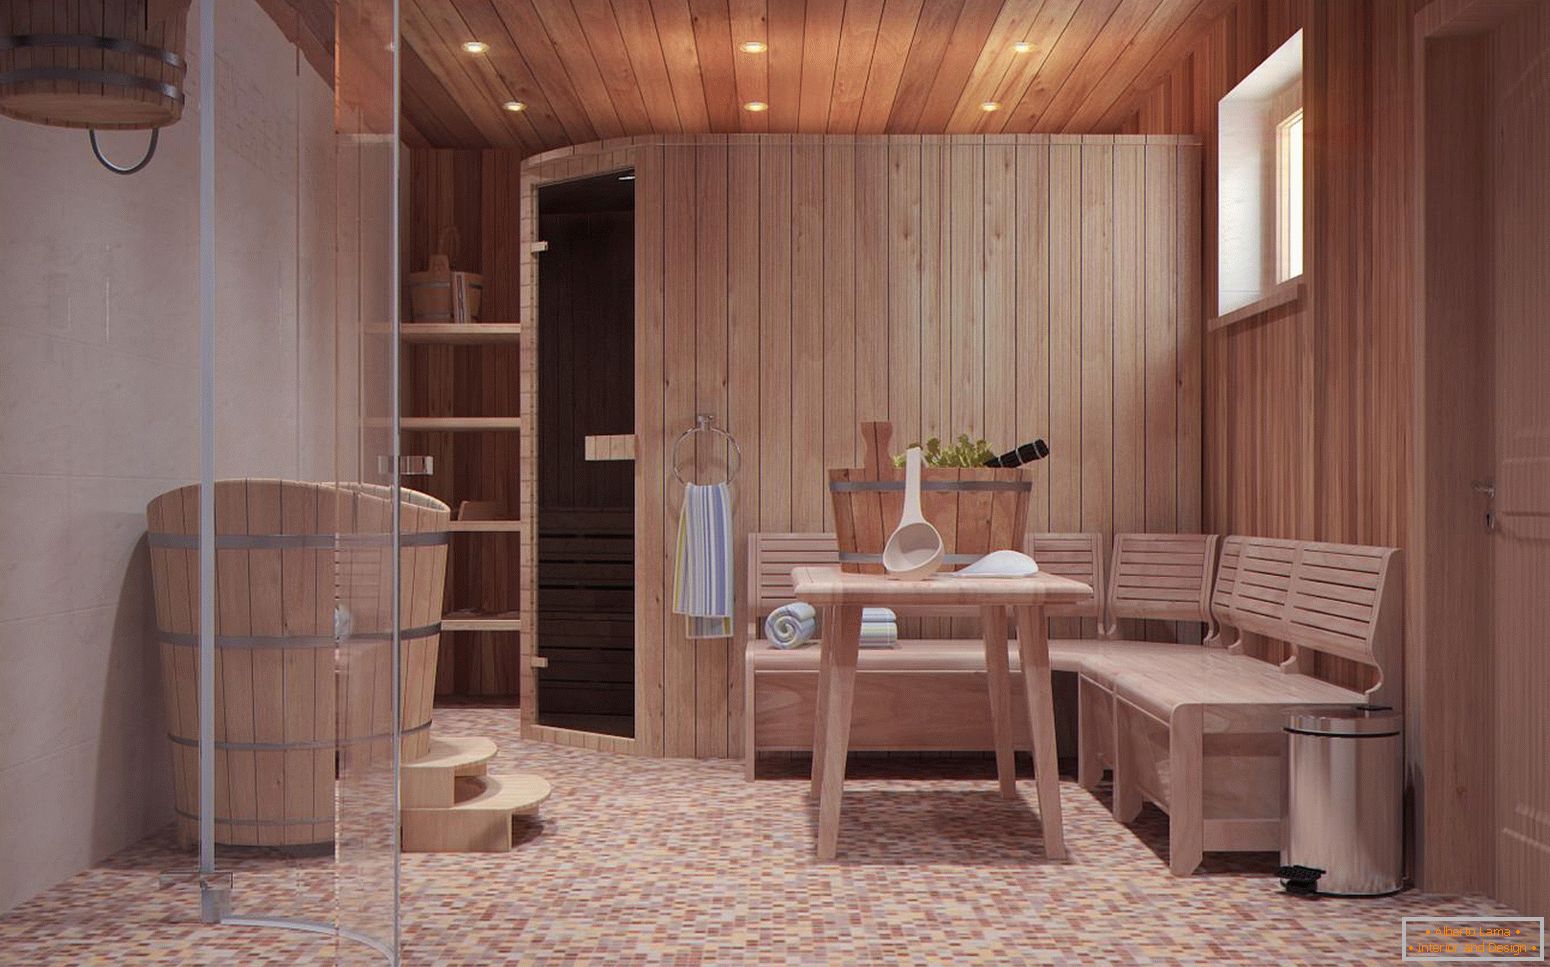 Soba za opuštanje u skandinavskom stilu kupališta